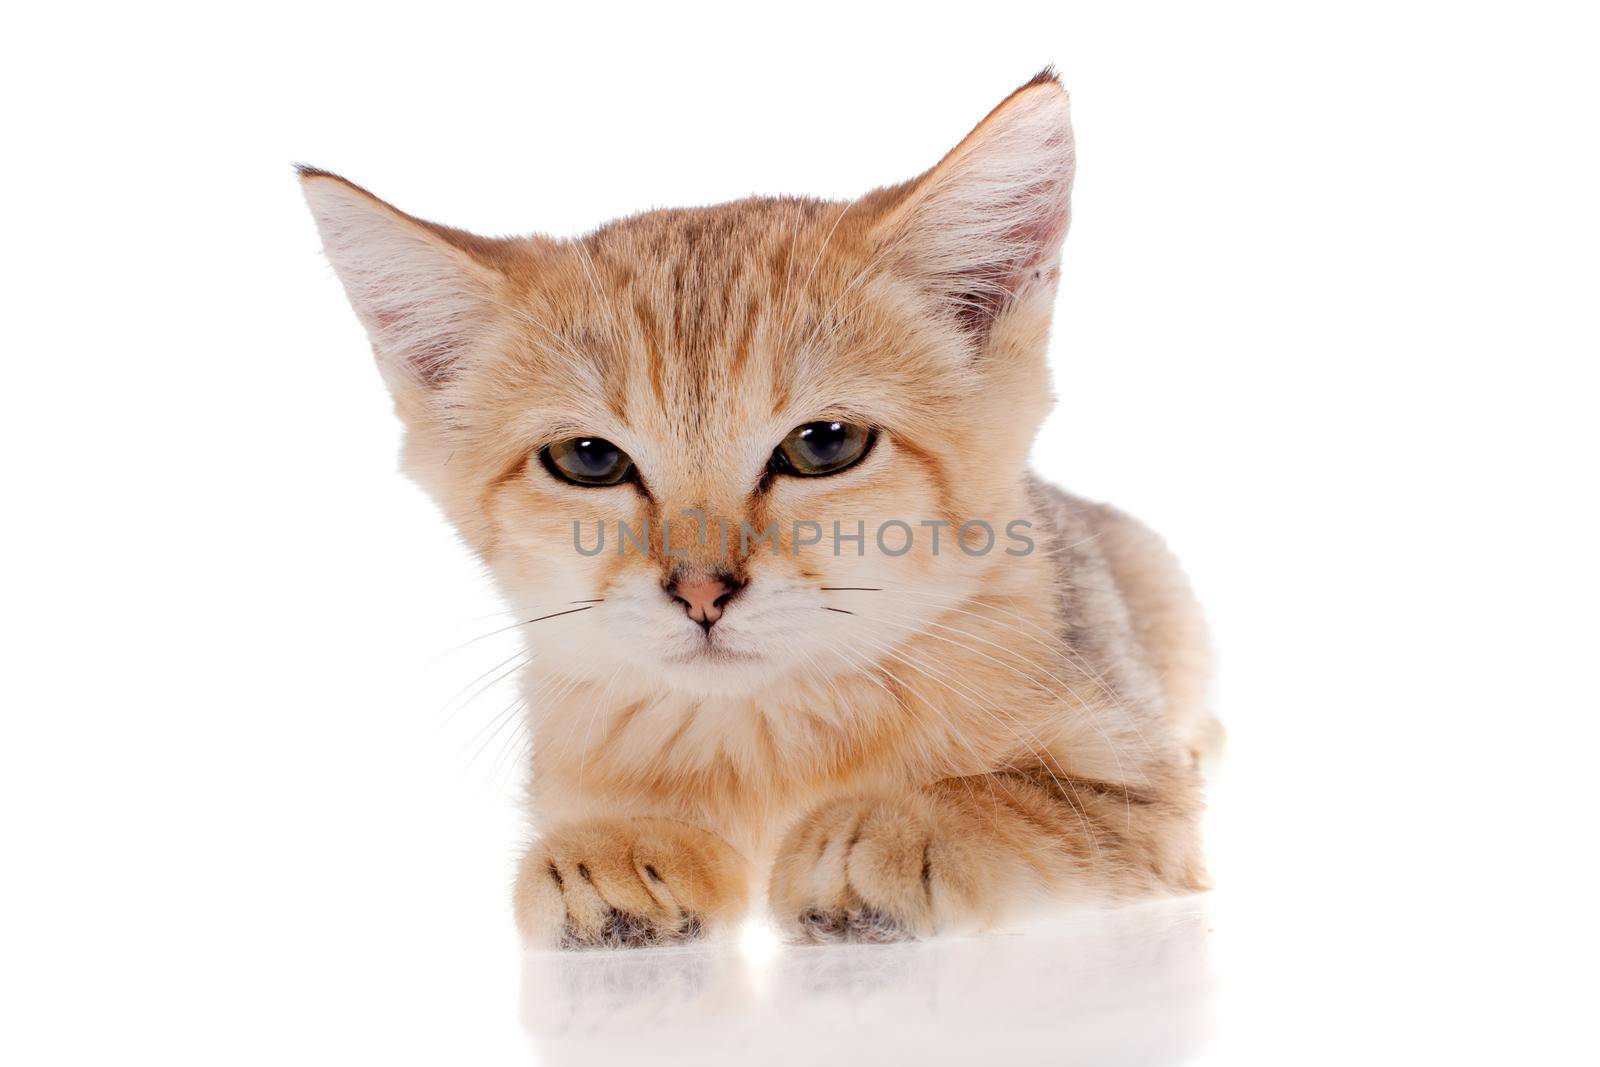 Sand cat, Felis margarita, isolated on white background